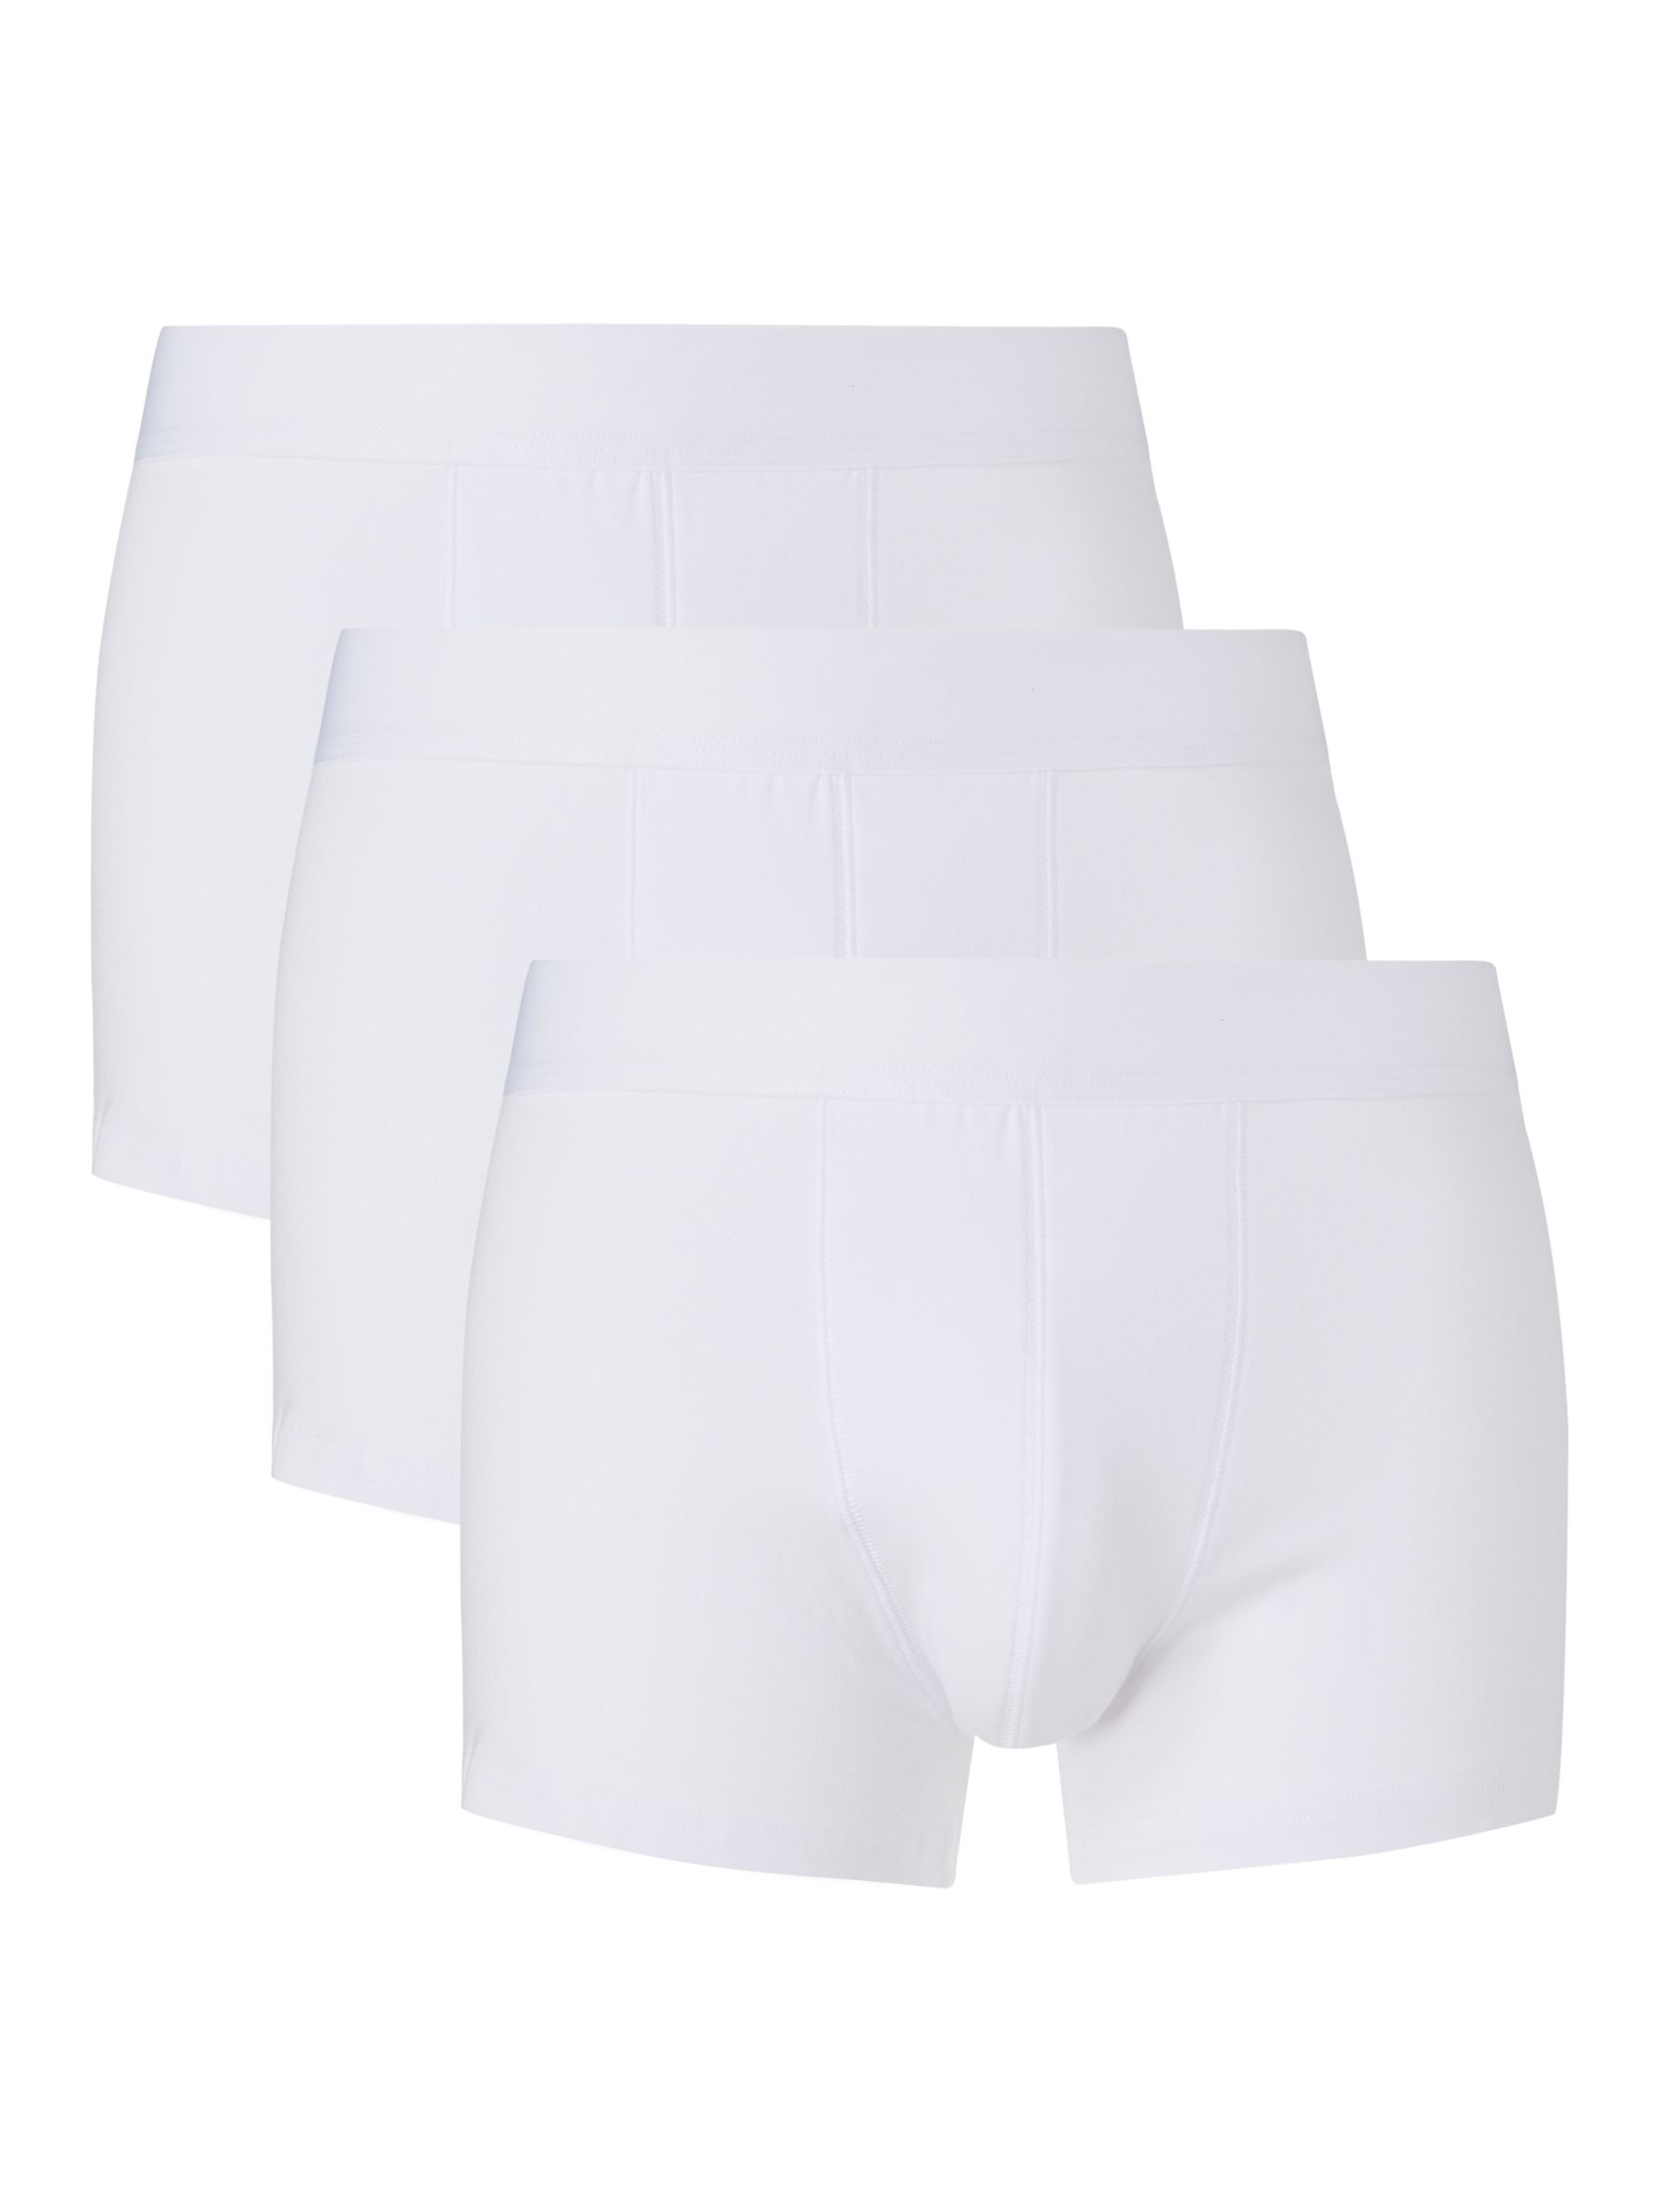 Men's Cotton Trunks - Small, White, 3 Pack